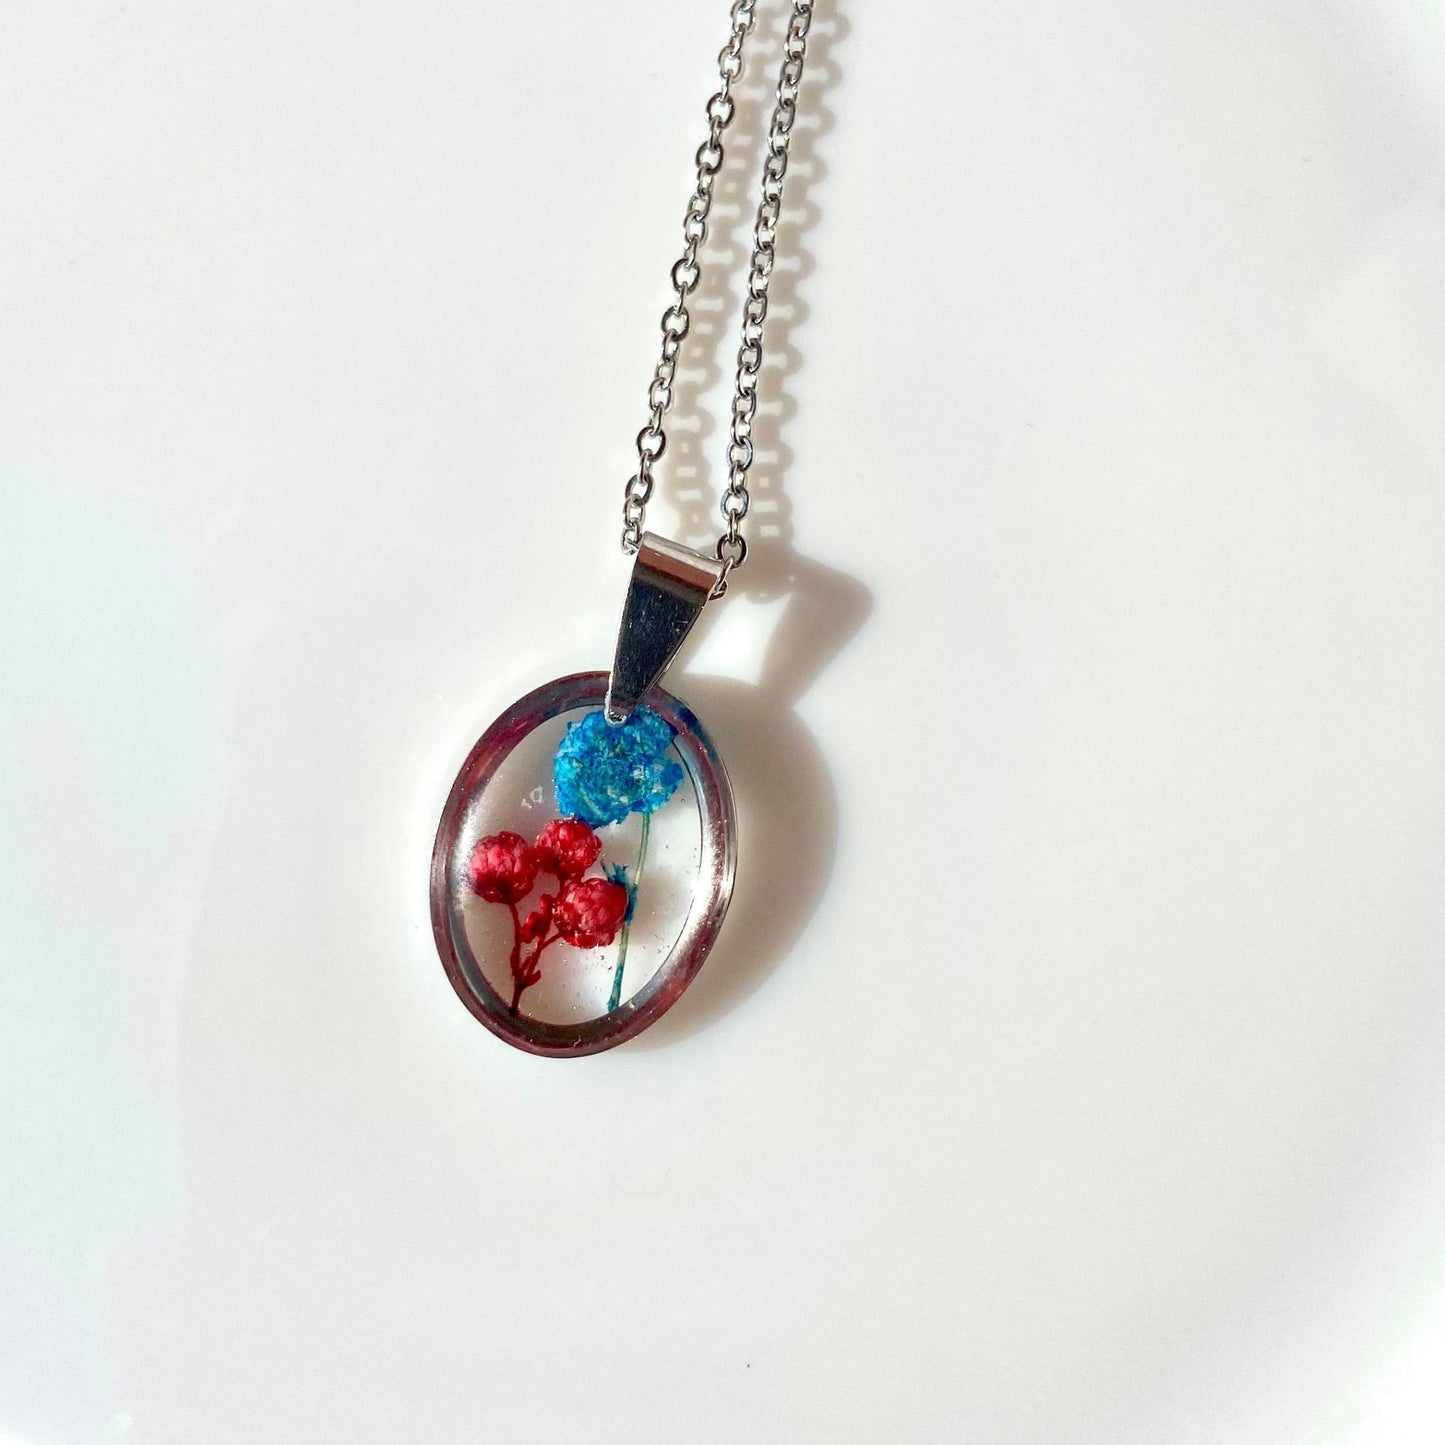 Ozothamnus rouge et bleu bébé souffle fleur collier cadeau de fête des mères pour elle - Lorred